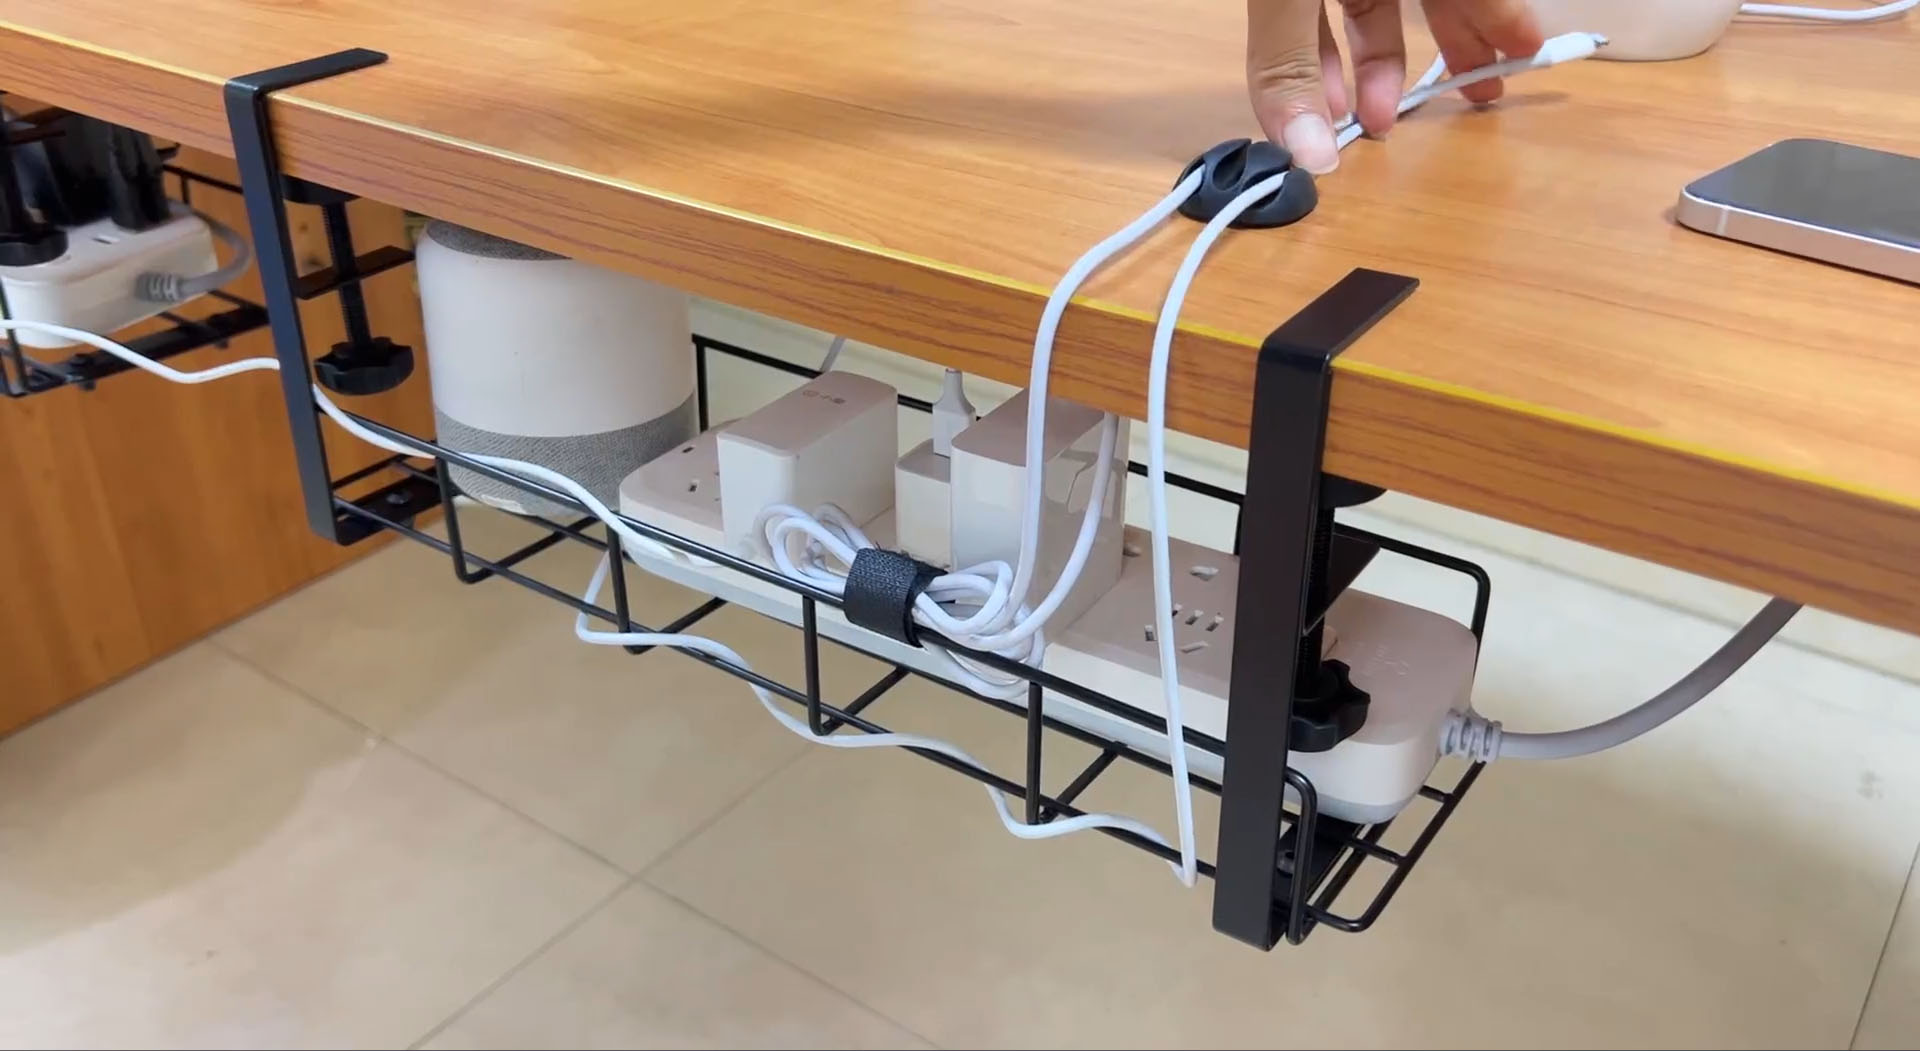 Поднос для прокладки кабеля под столом и липучка.